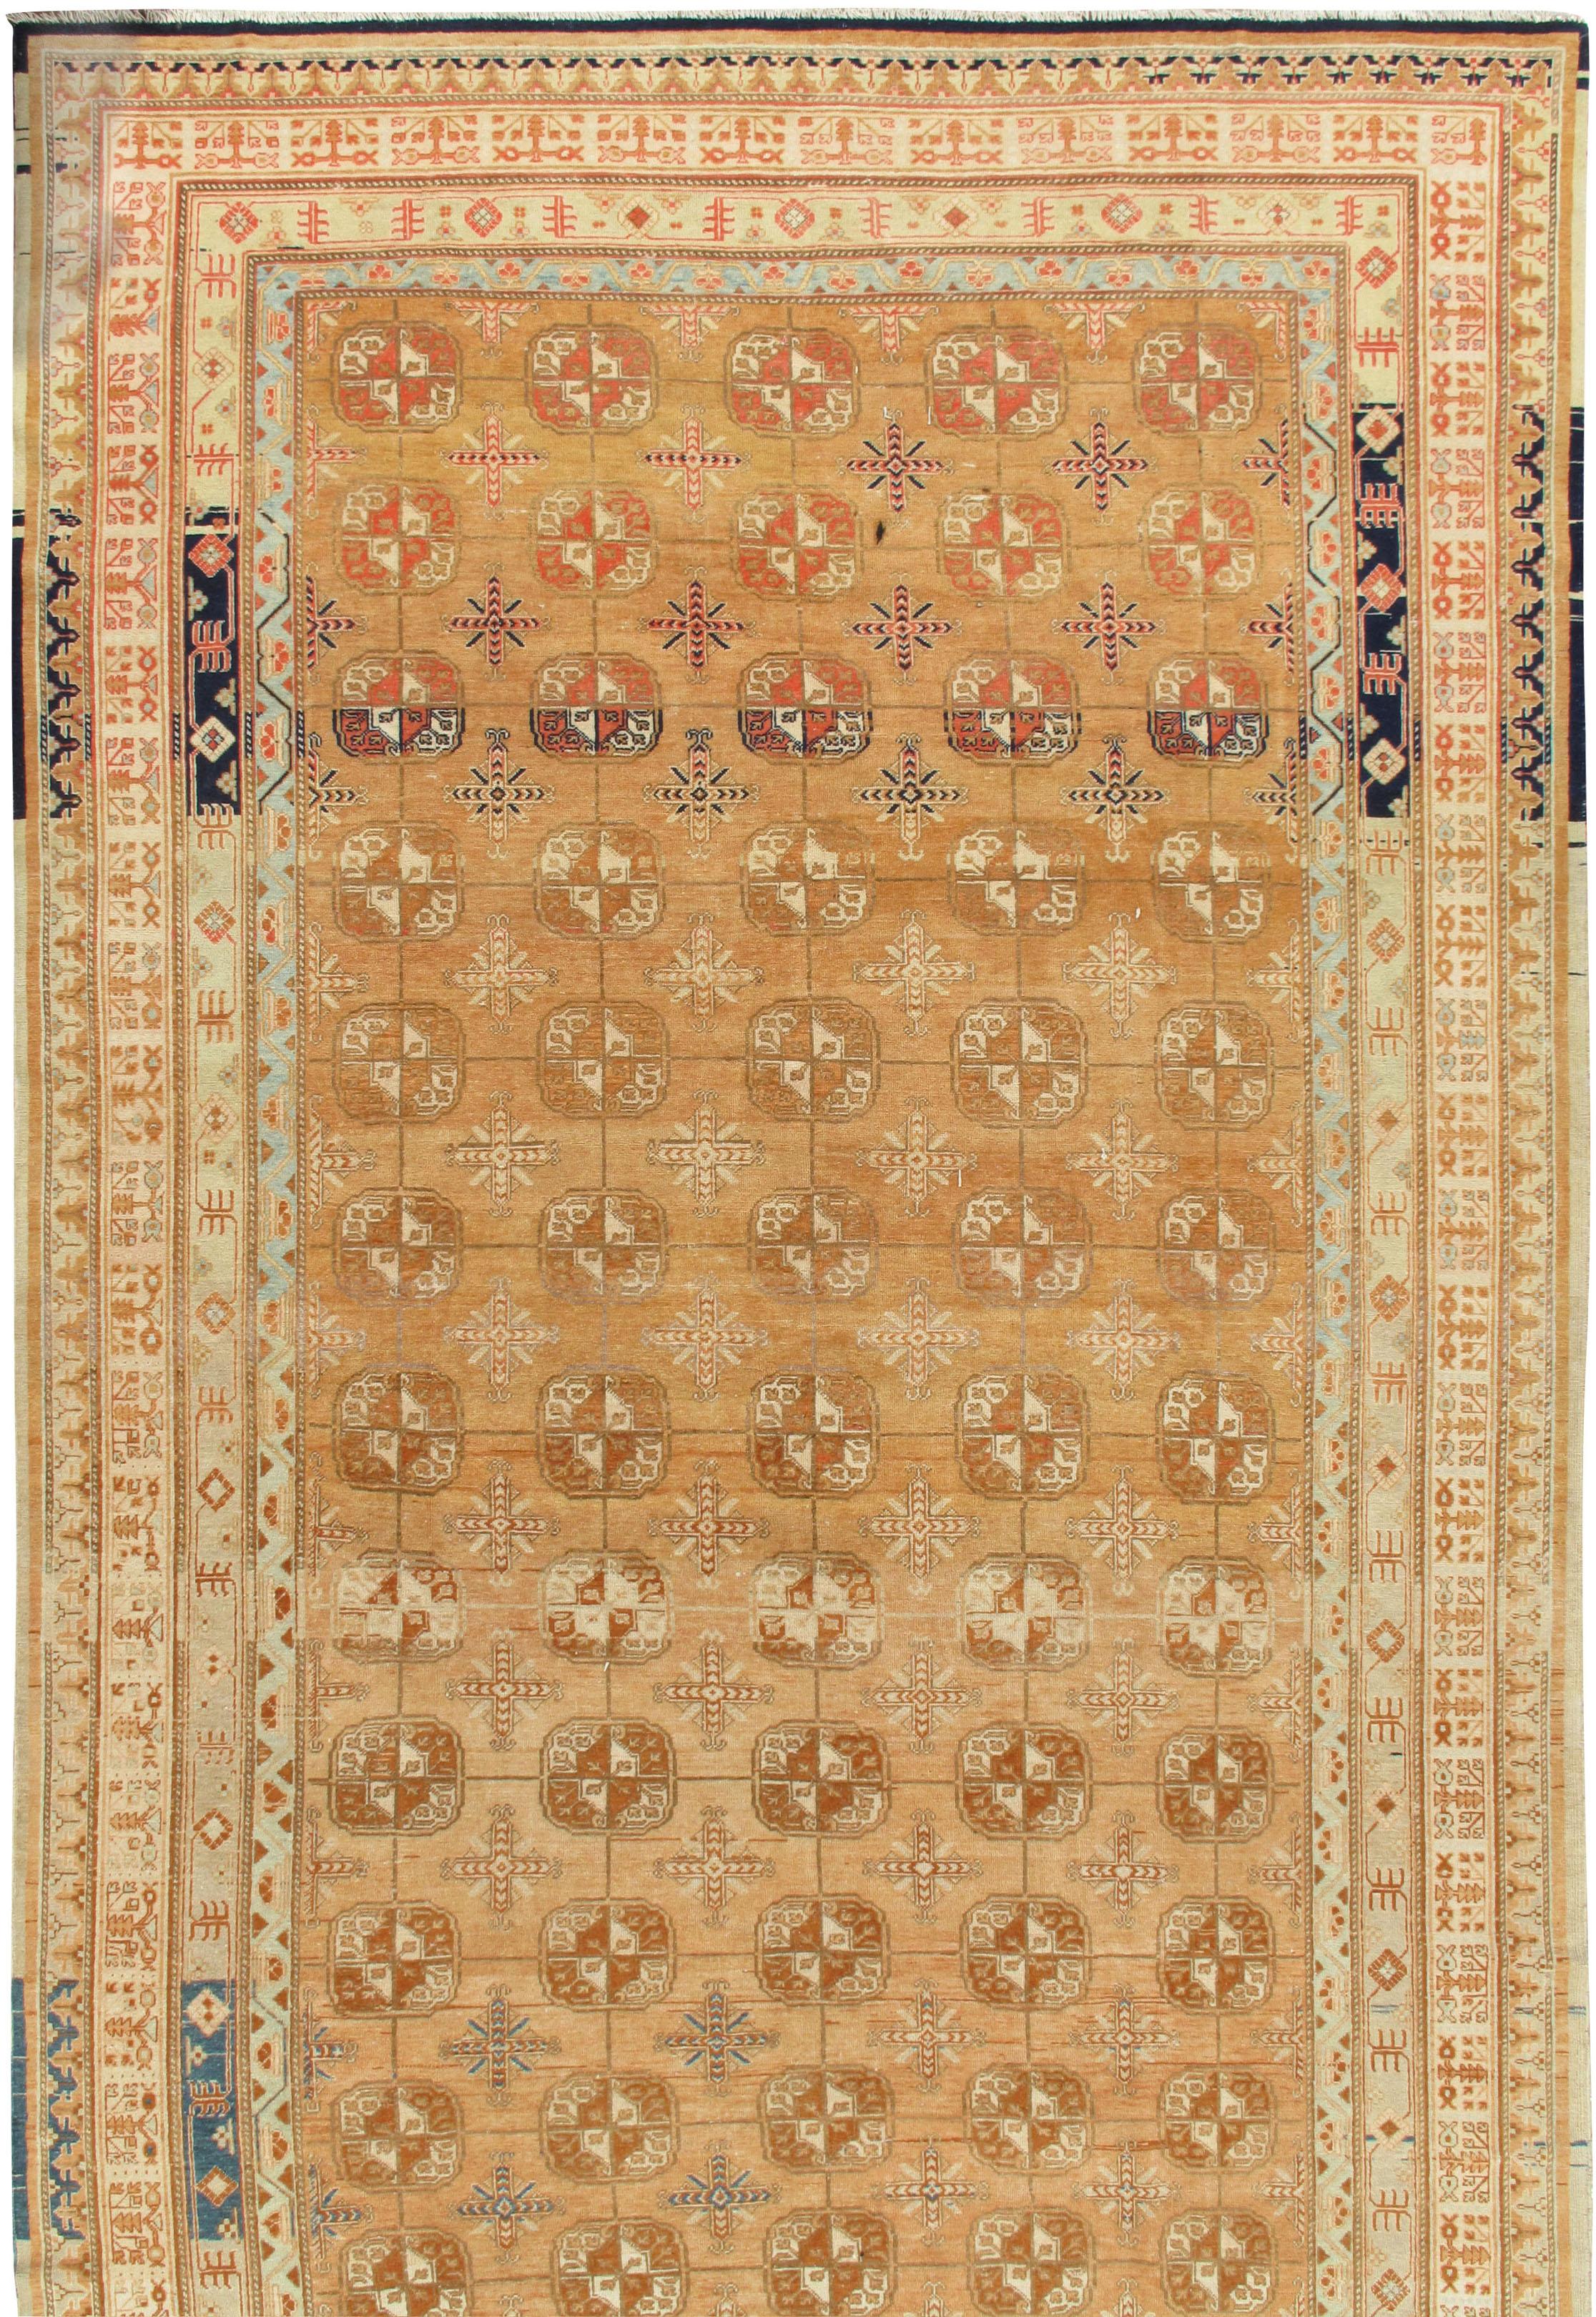 Hand-Knotted Antique Khotan Carpet Rug